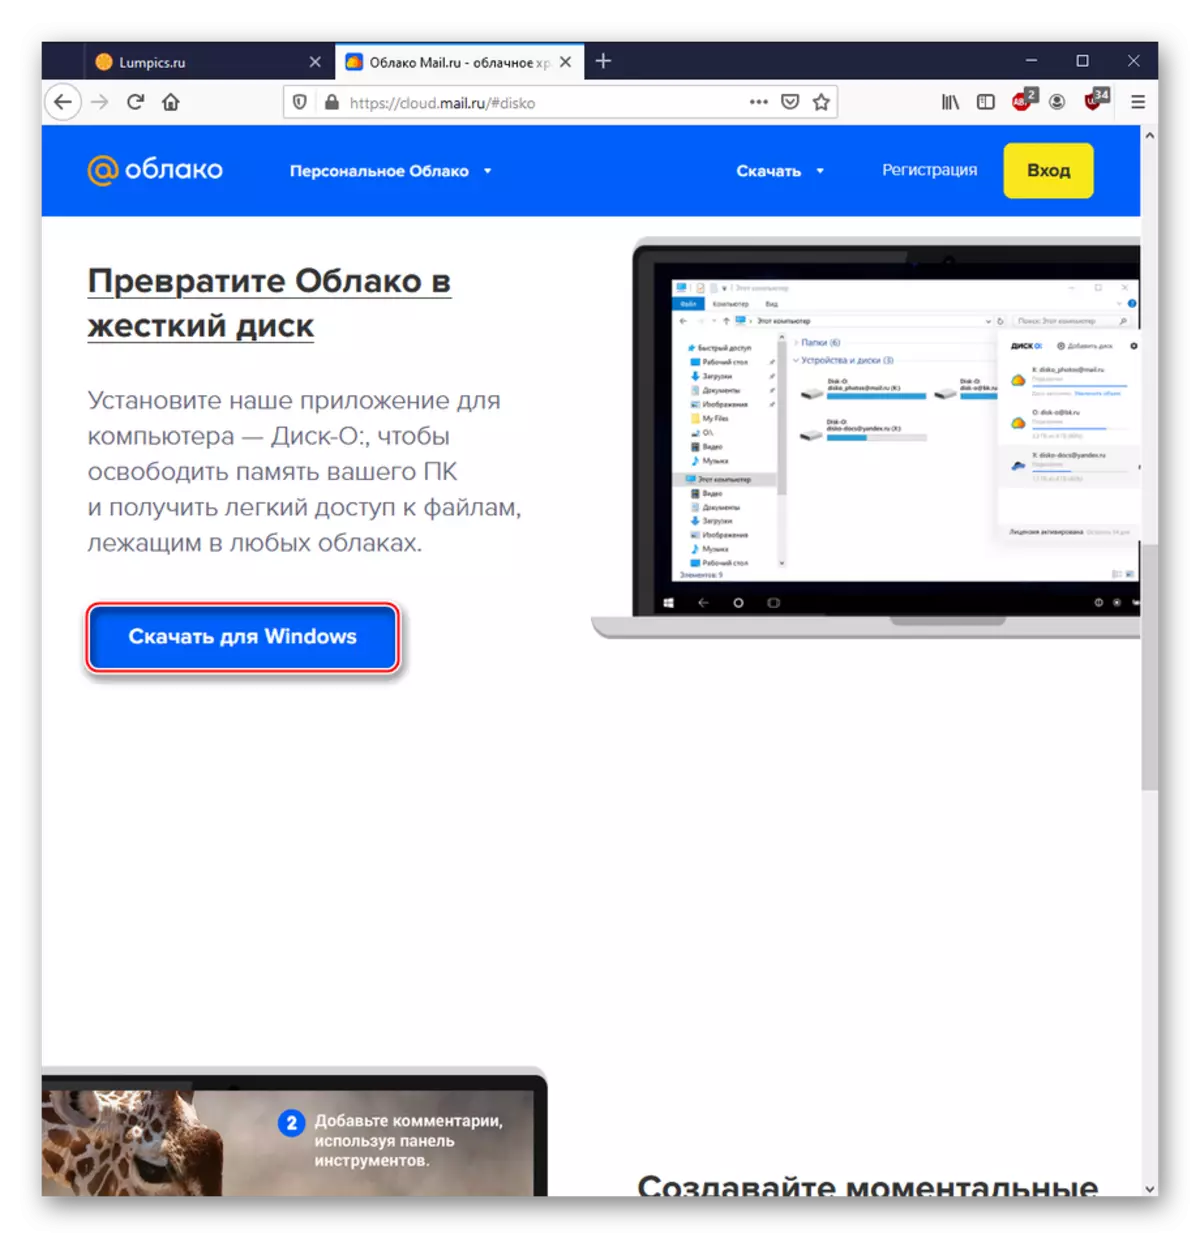 הורדת תוכנית מחשב לעבודה עם Service Cloud@mail.ru